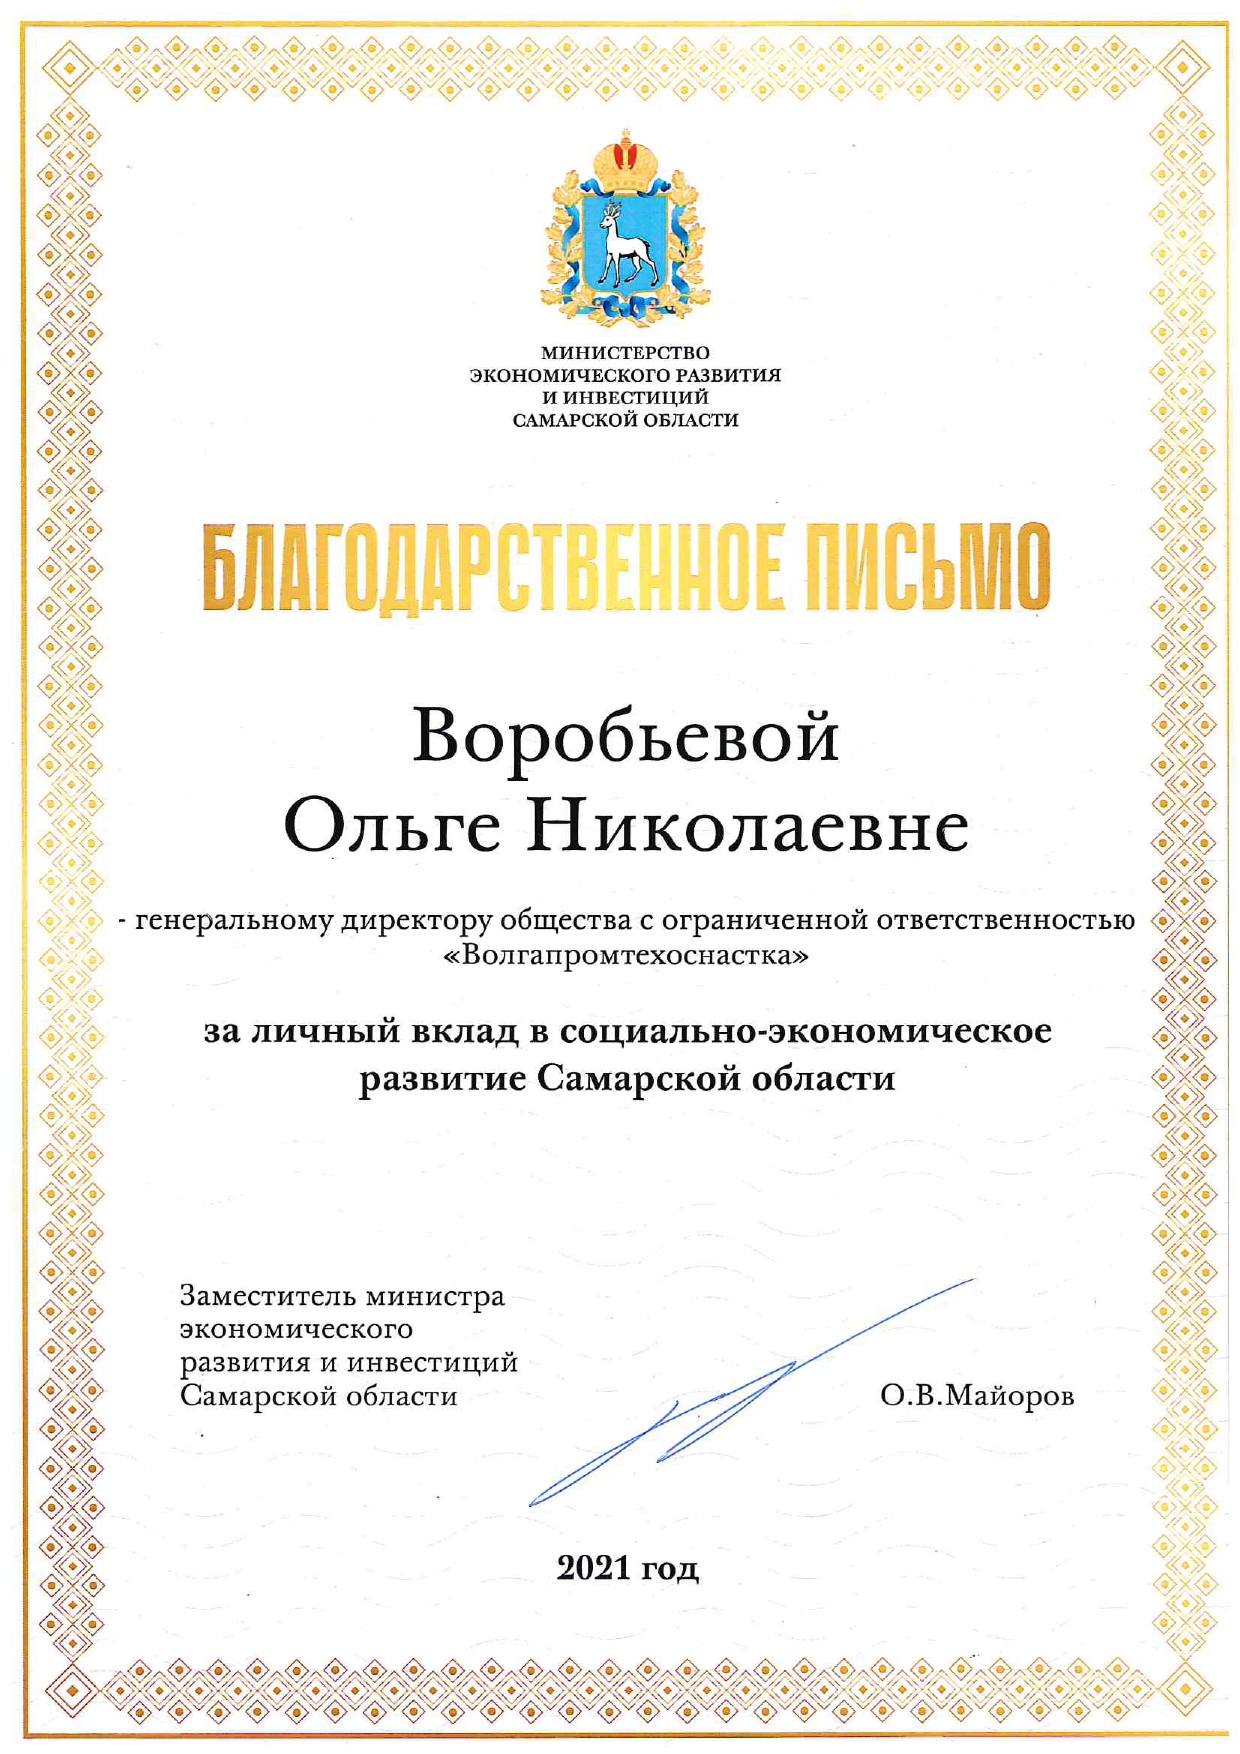  Благодарственное письмо от Министра экономического развития и инвестиций Самарской области!